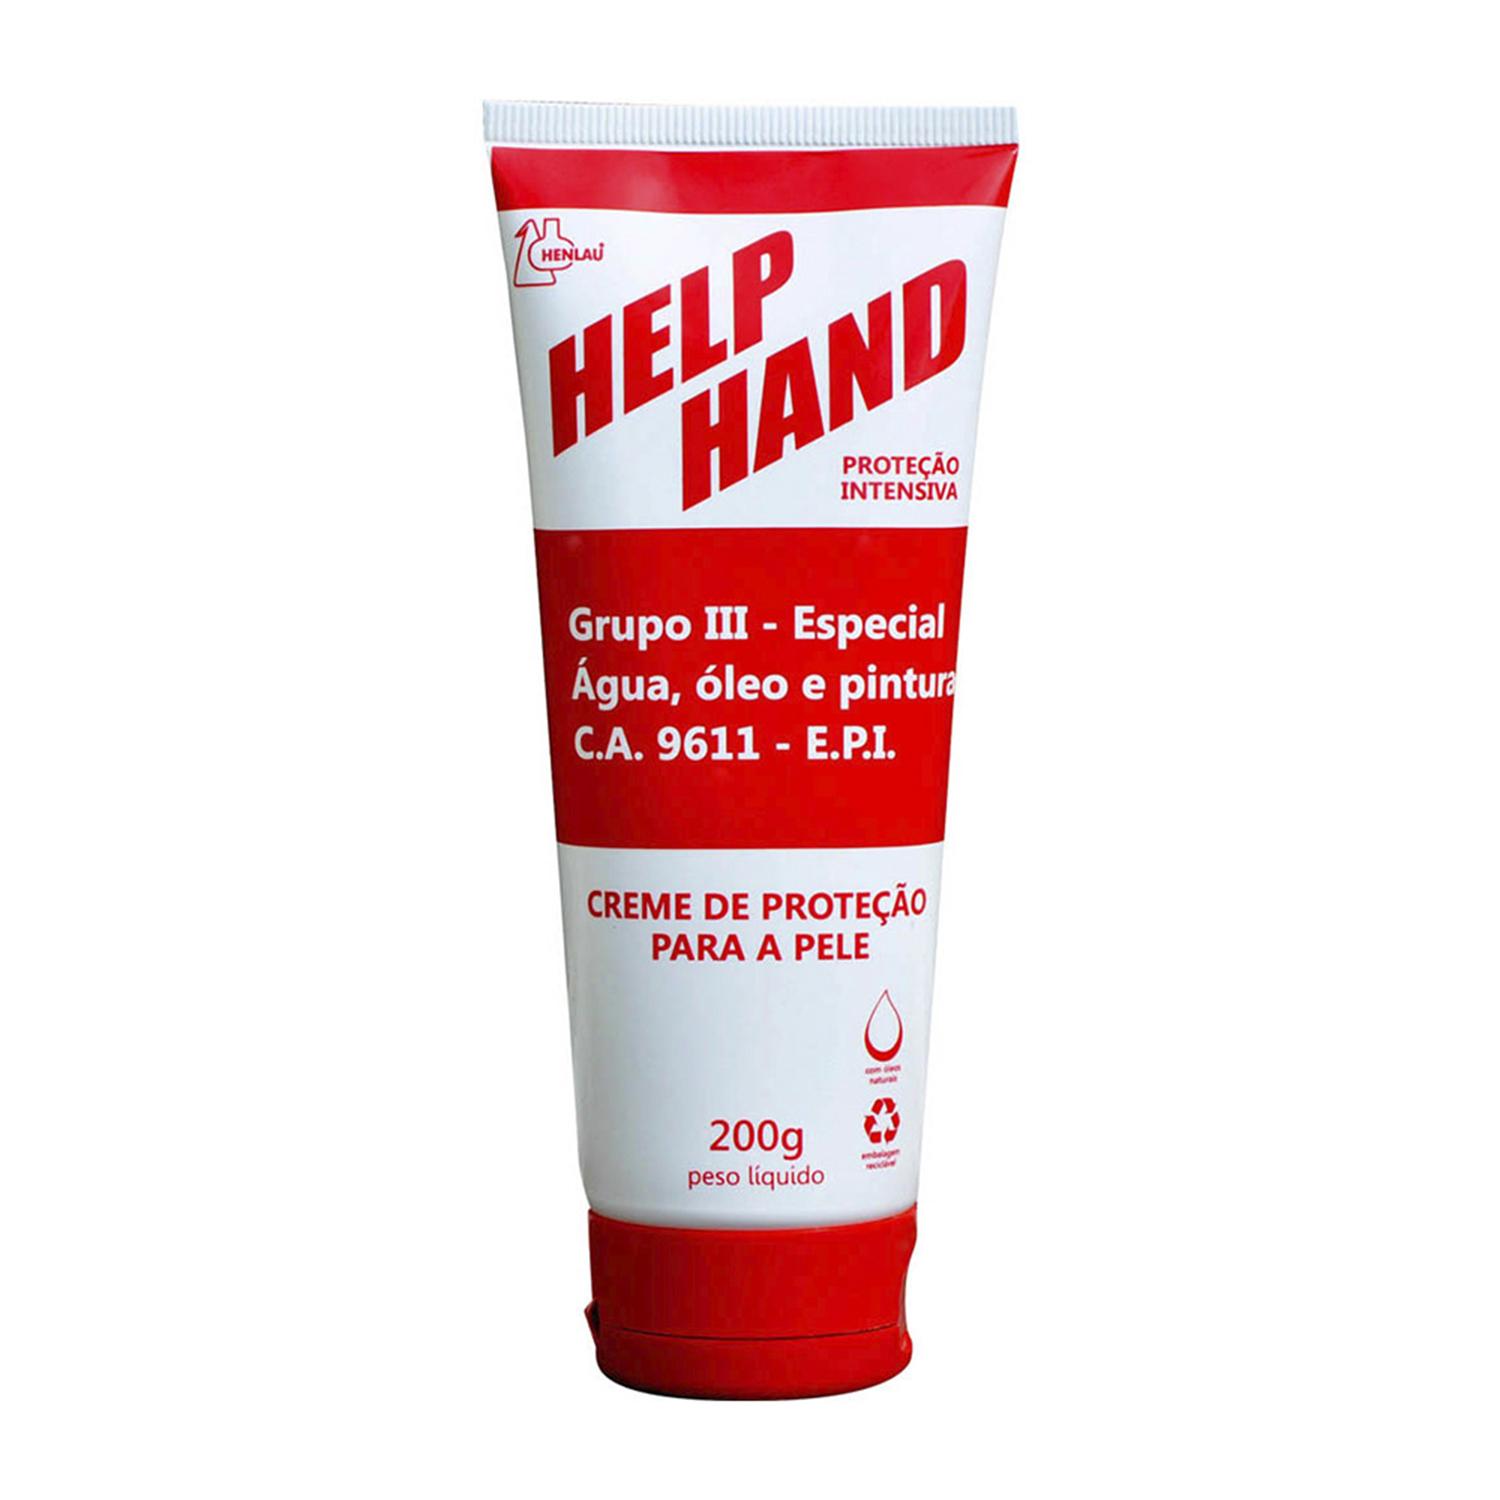 Help Hand - Proteção para a pele Grupo lll